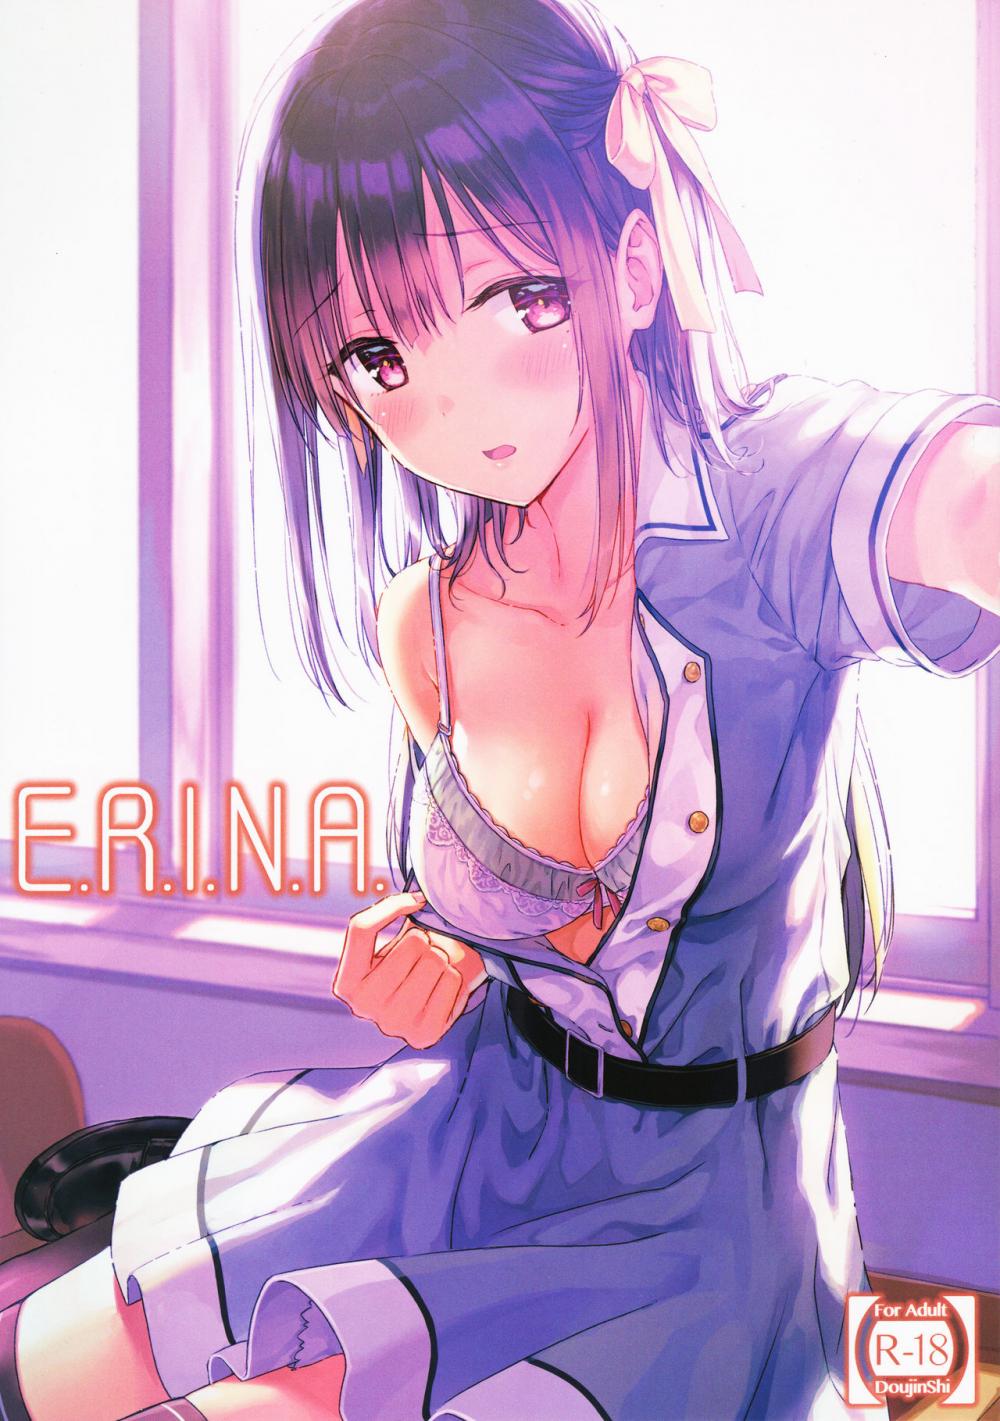 Hentai Manga Comic-E.R.I.N.A.-Read-1